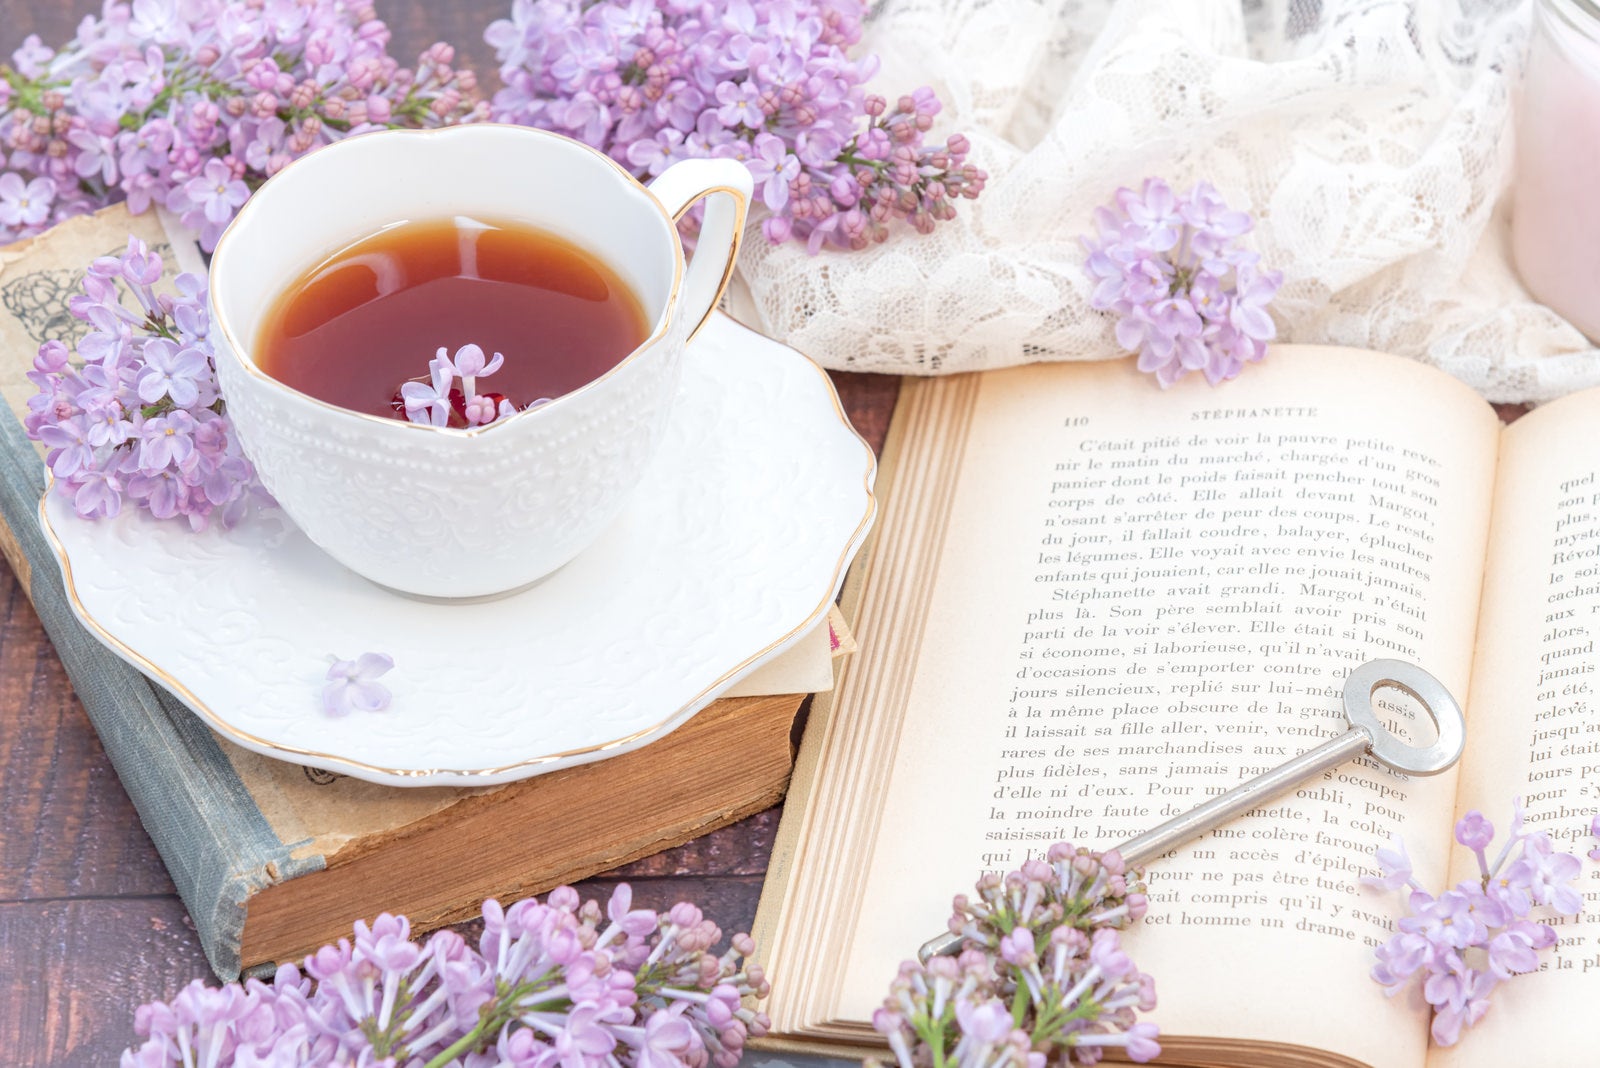 「無造作に置かれた鍵とライラックの花びら浮かぶ紅茶」の写真